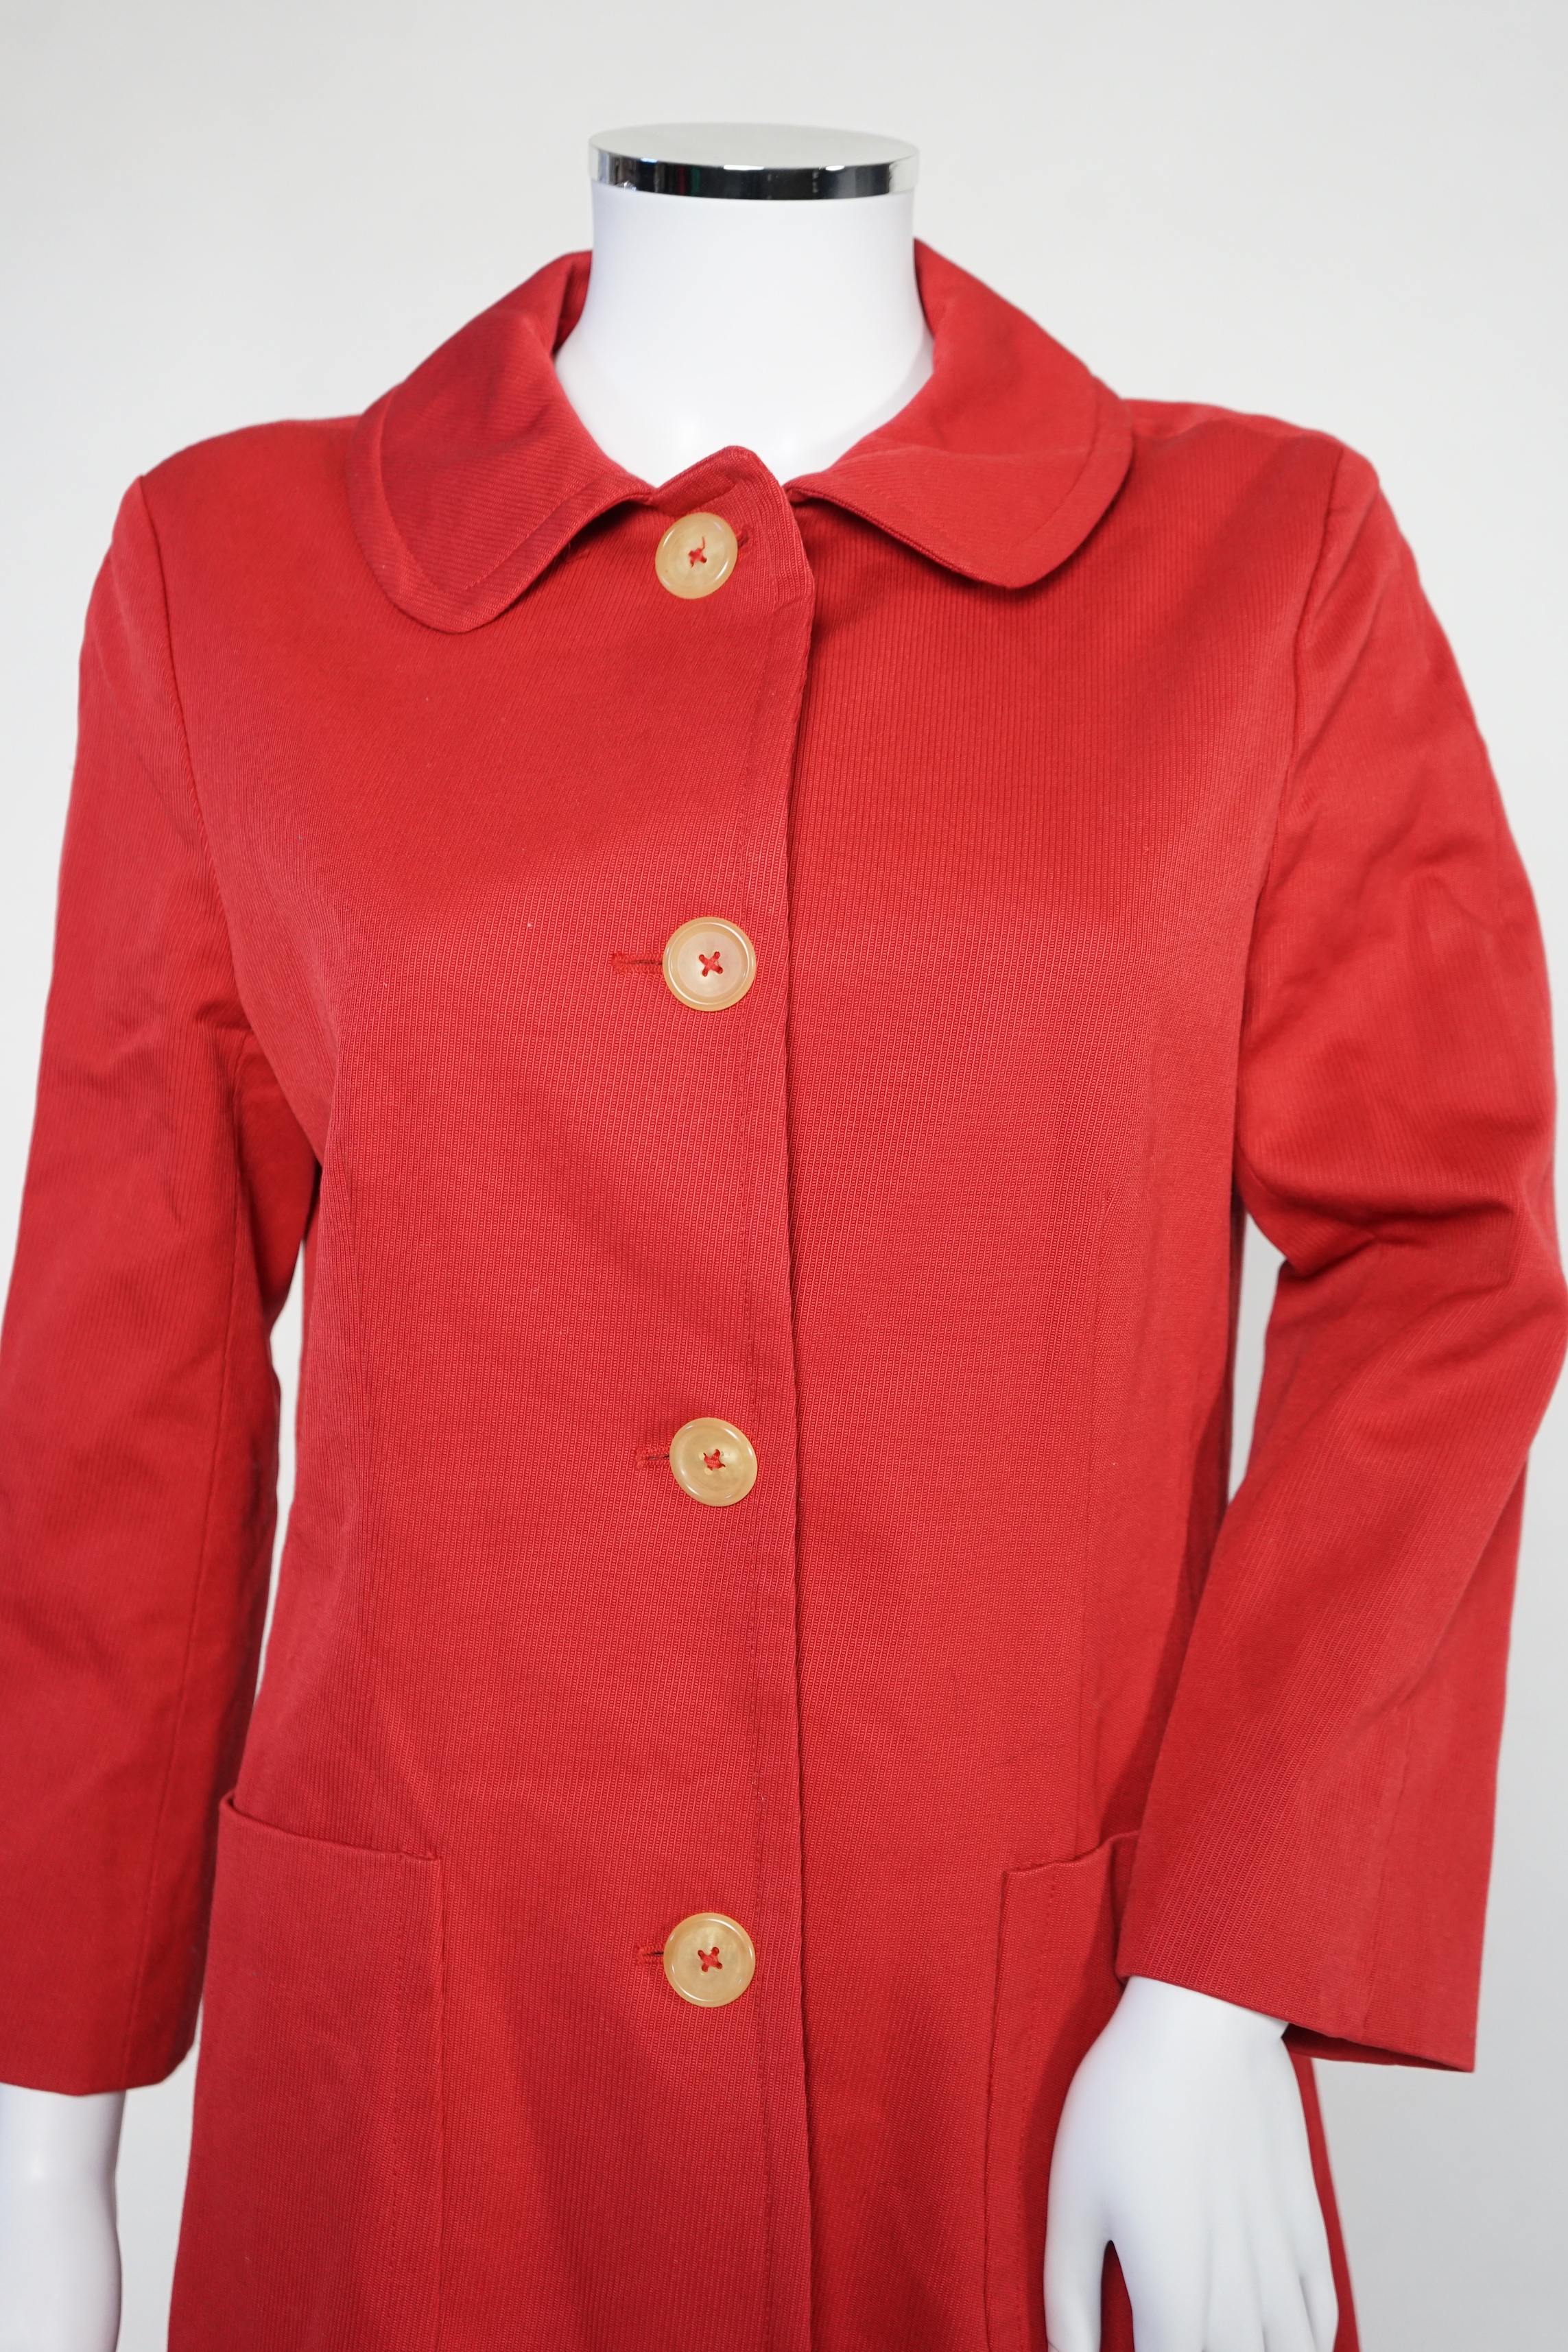 A DKNY red lady's coat and a DKNY satin jacket, coat size 6, jacket size 8